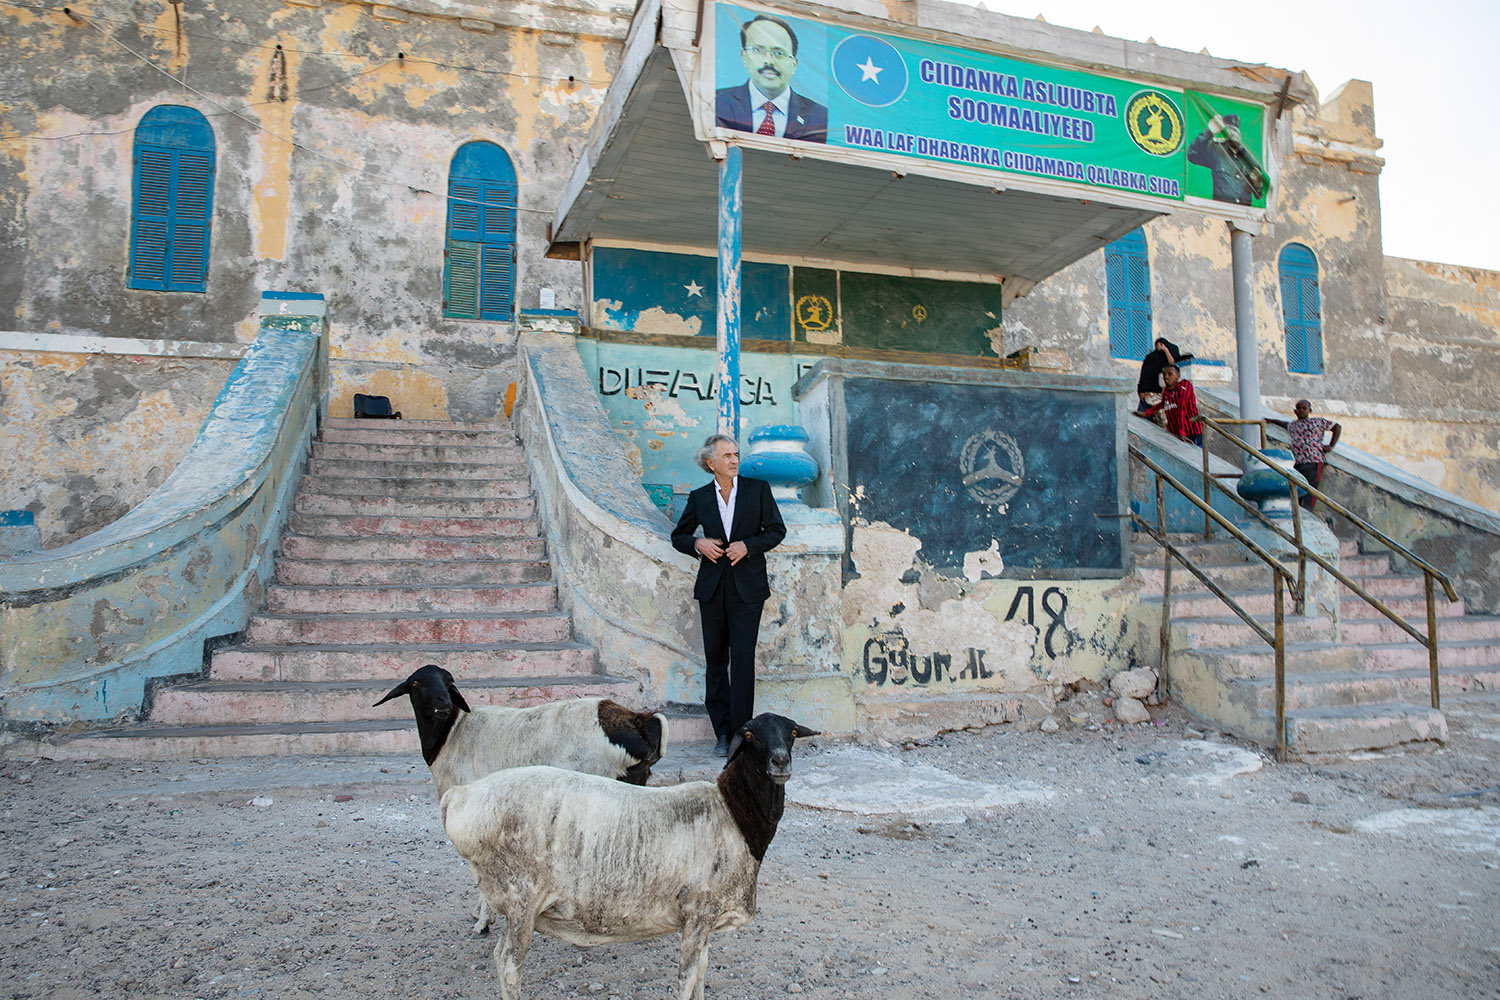 Bernard-Henri Lévy dans une rue de Mogadiscio, il y a des chèvres et premier plan.